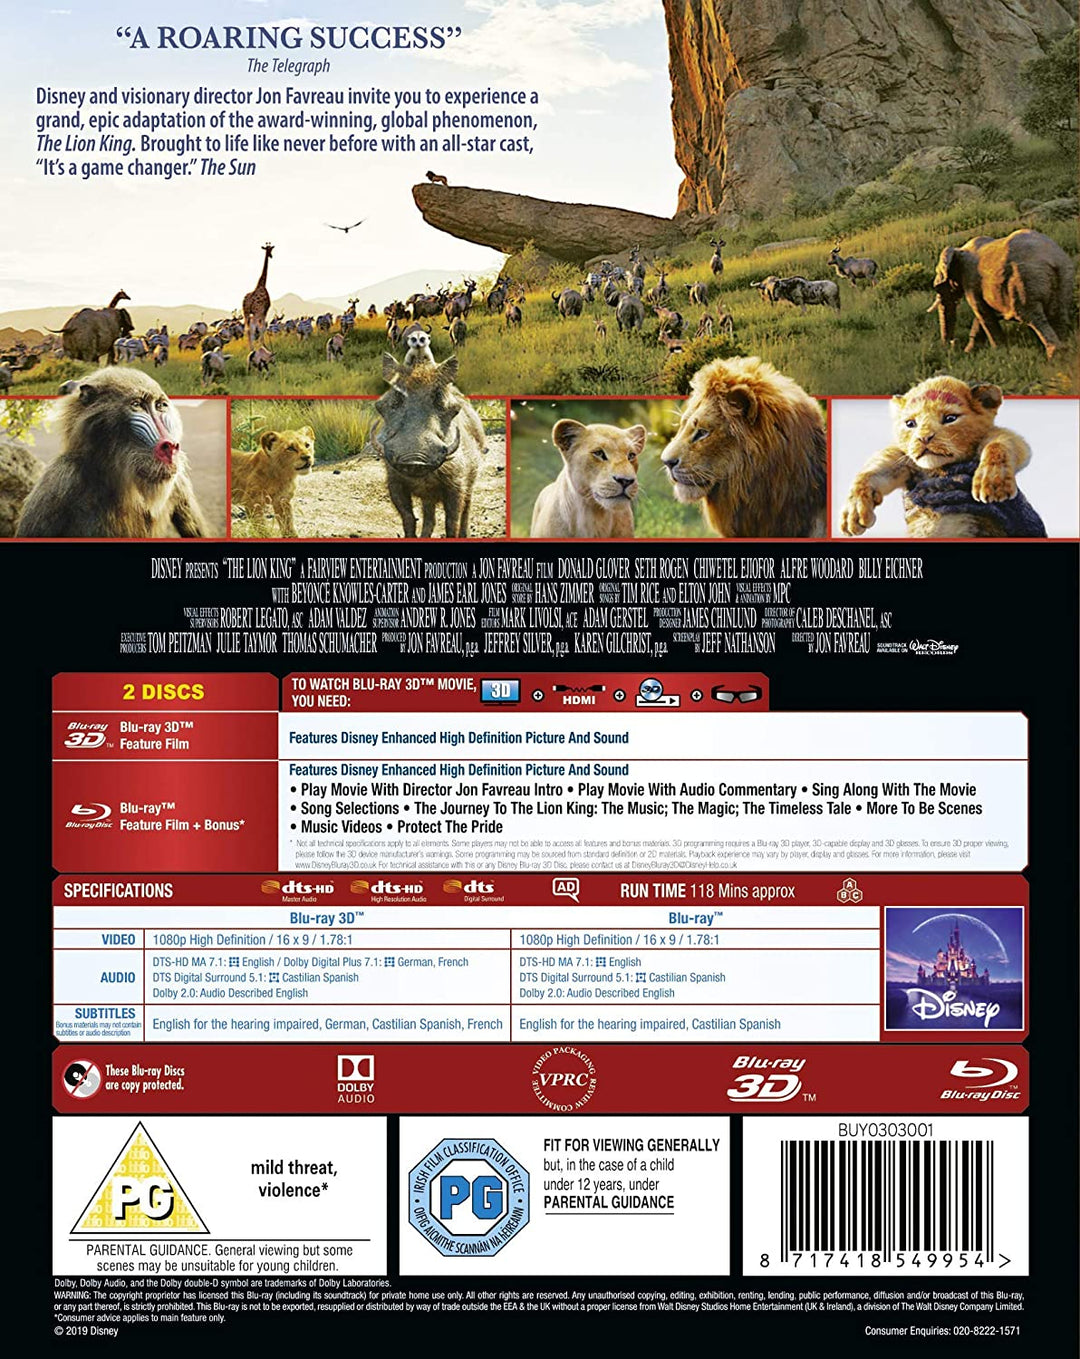 Disneys Der König der Löwen – Musical/Familie [Blu-Ray]